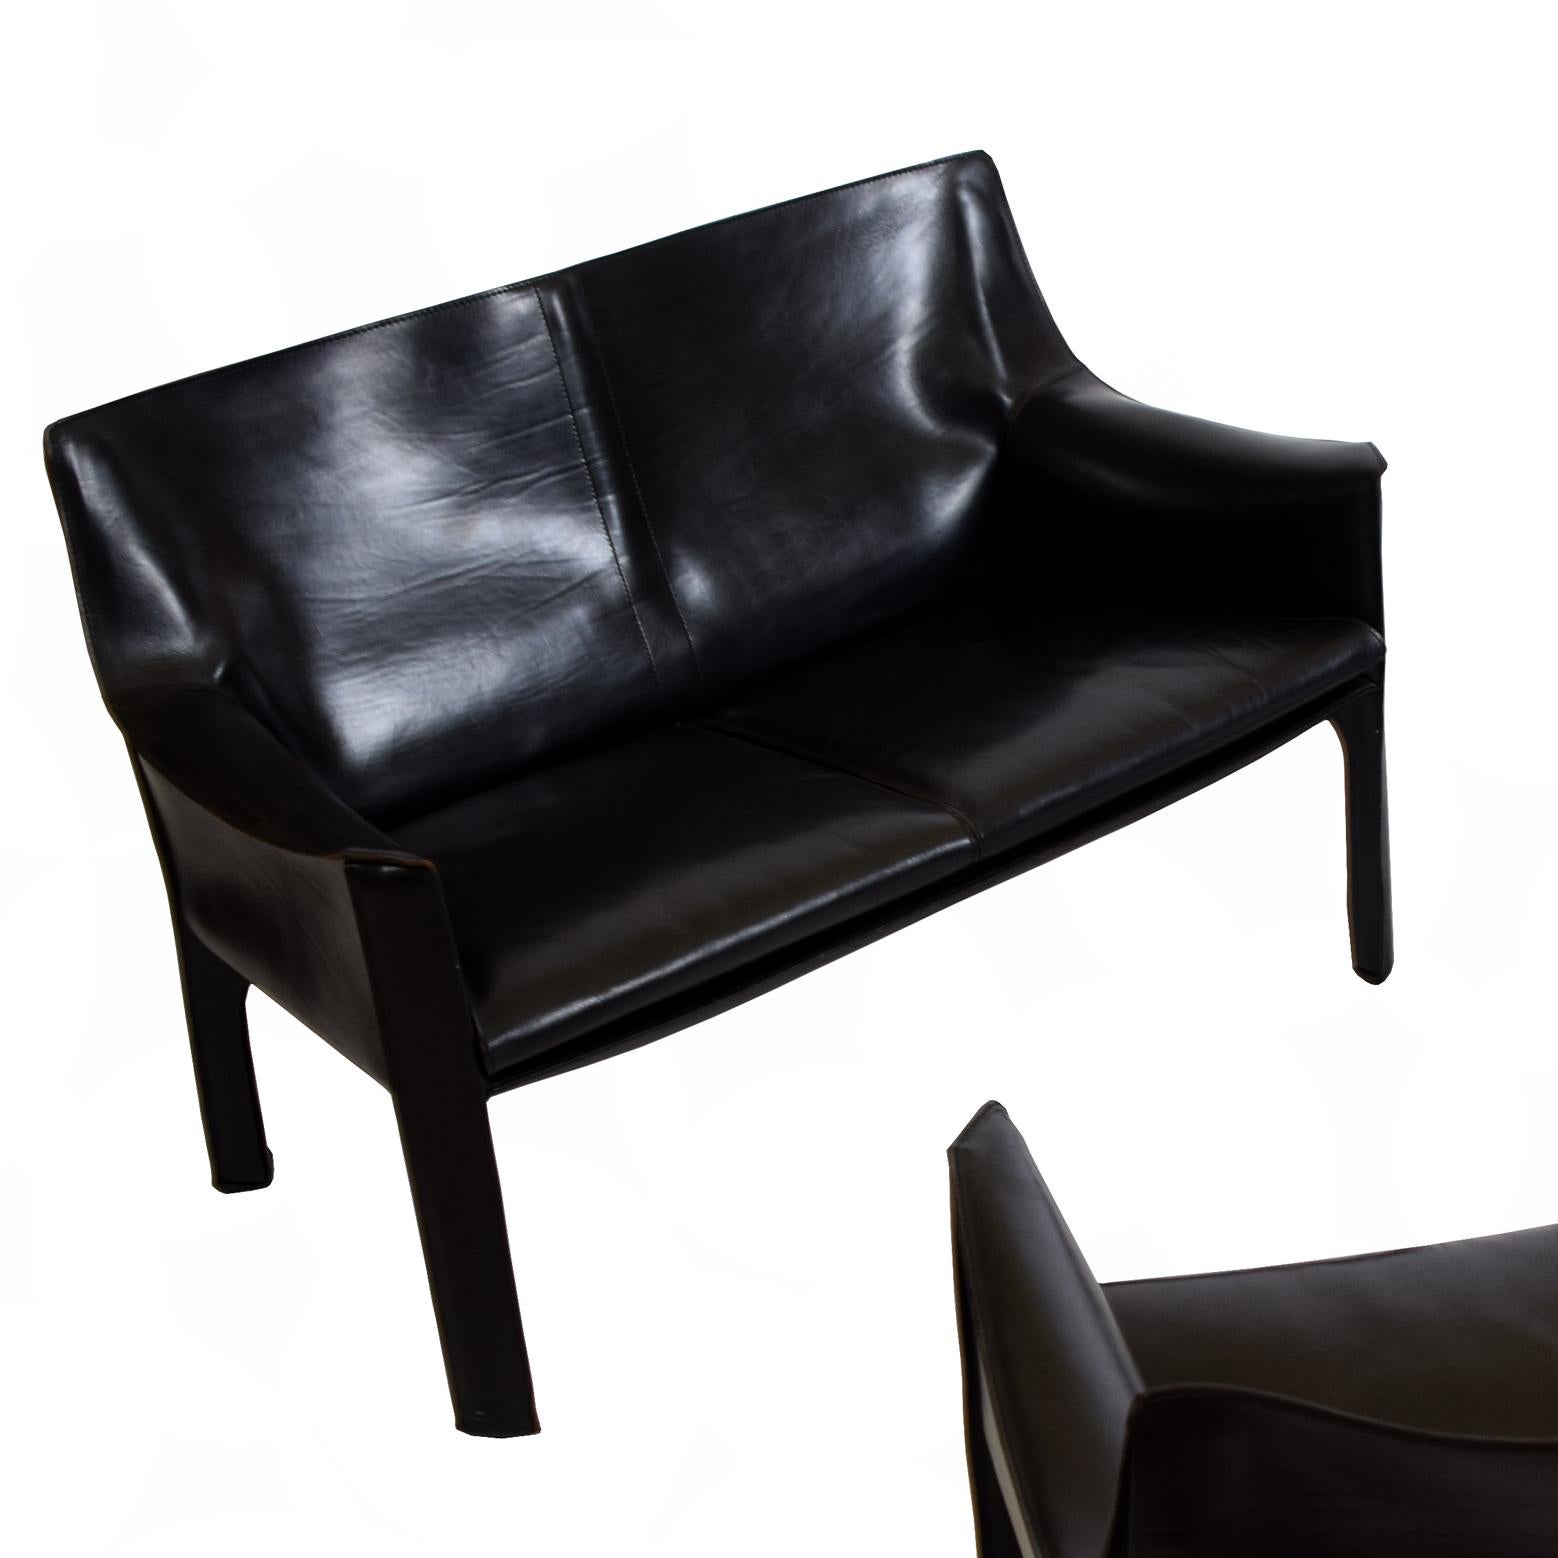 Sessel SOLD  Sofa, entworfen von Mario Bellini im Jahr 1979 für Cassina, Italien. Stahlrahmen mit dickem schwarzem Leder überzogen. Mit Cassina-Logo gestempelt.